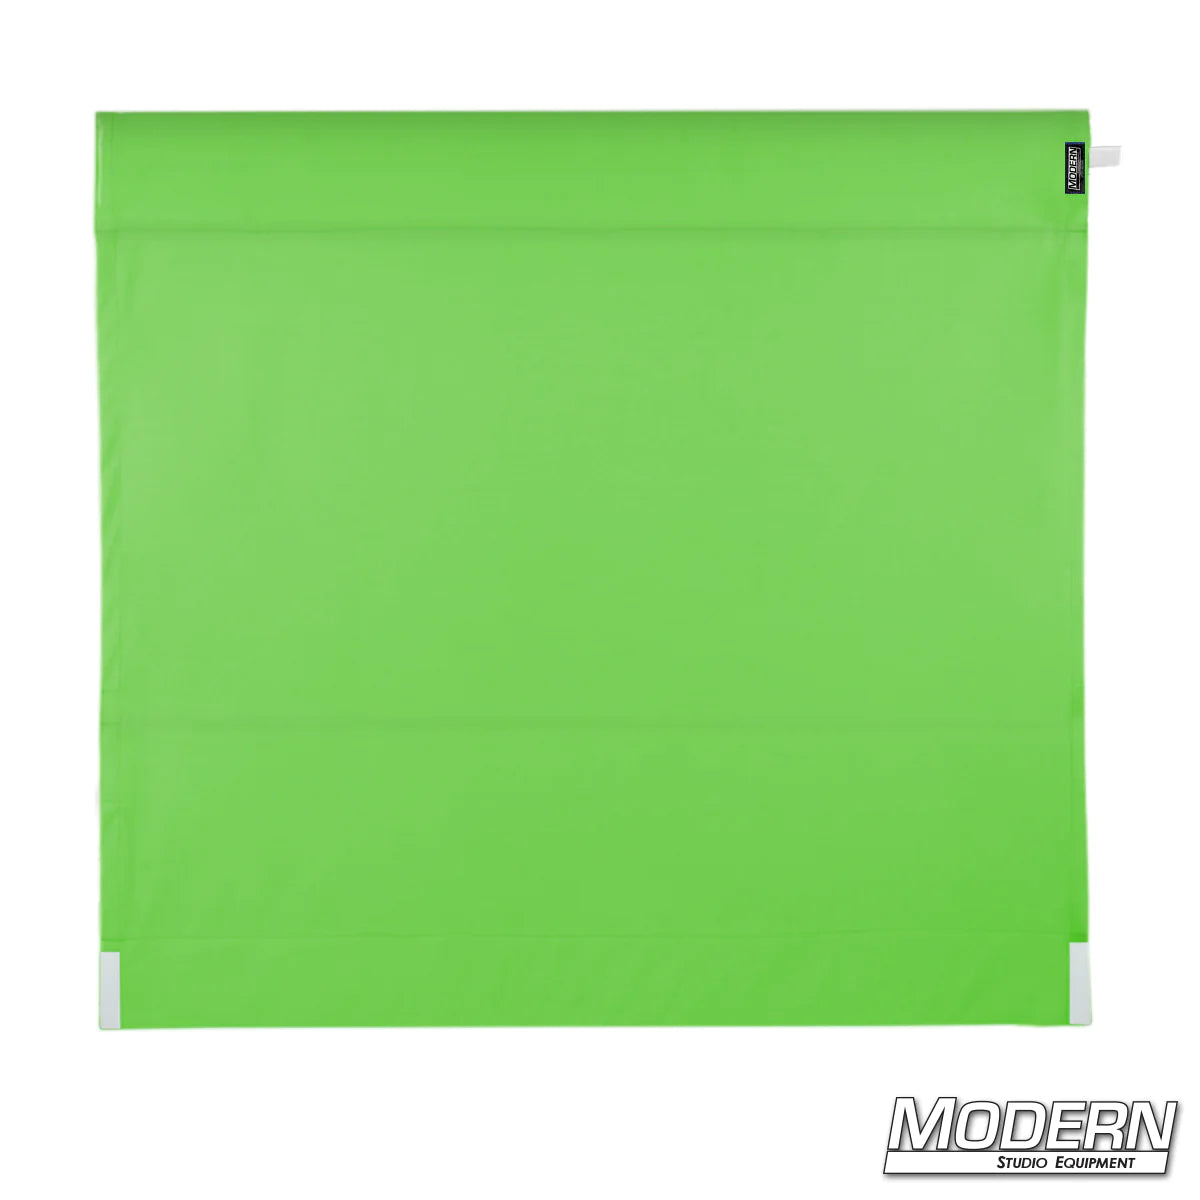 Wag Flag - Digital Green